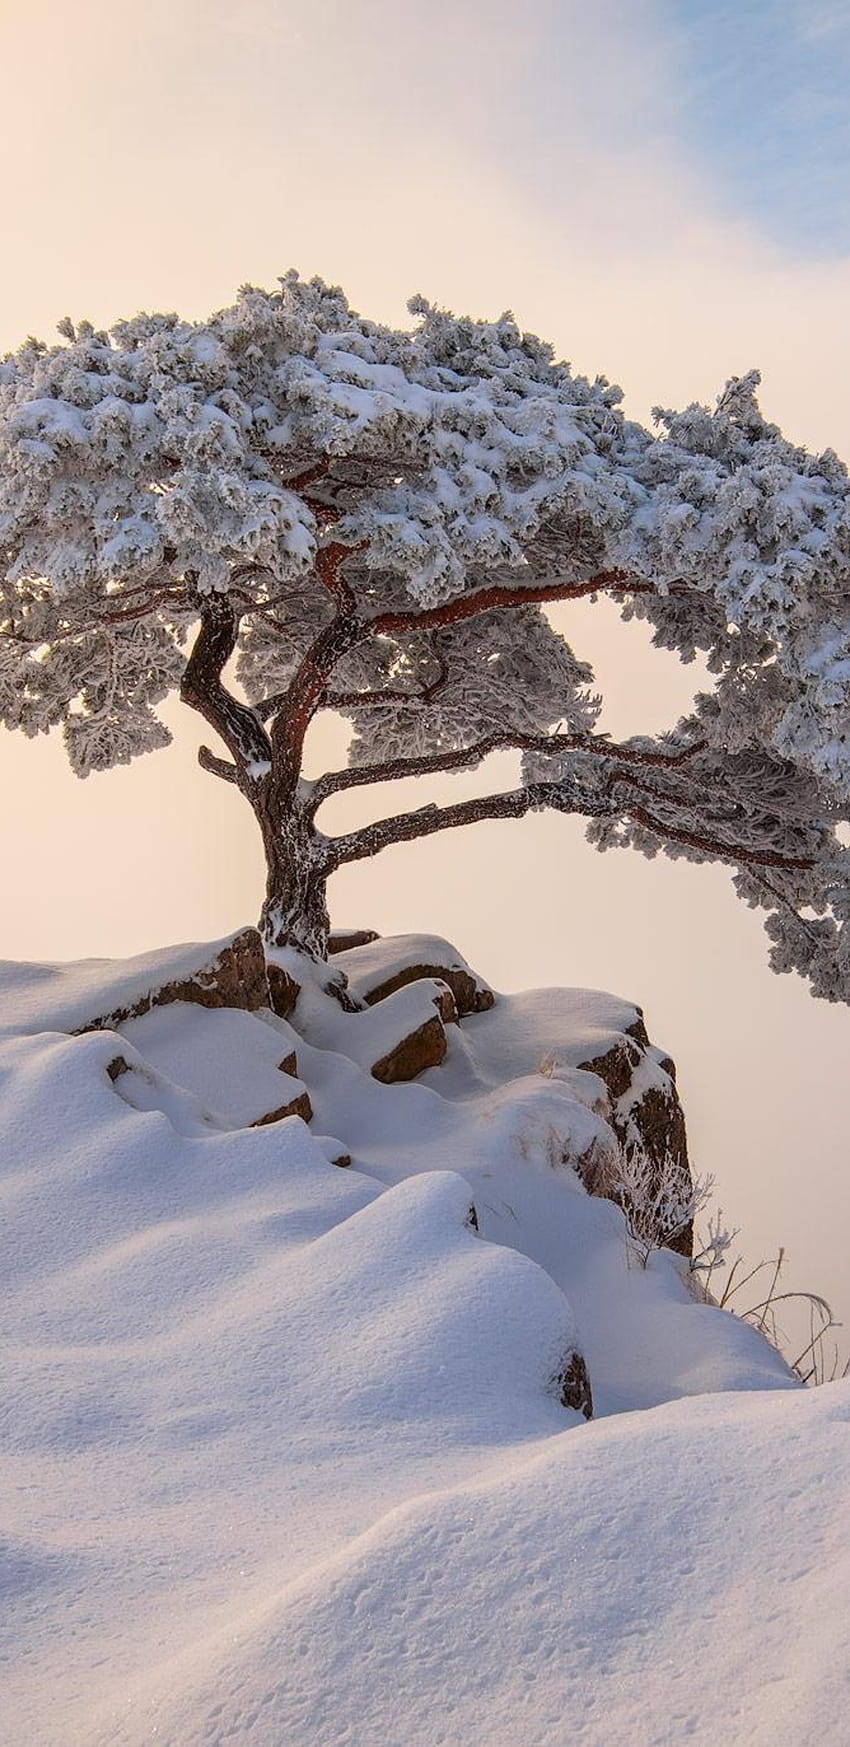 Mùa đông luôn là thời điểm đẹp nhất để tạo ra những bức ảnh tuyệt đẹp, đặc biệt là khi chúng ta sử dụng sản phẩm Samsung. Hãy tận hưởng mùa đông tuyệt vời này và xem ngay những bức ảnh về Winter Samsung trên trang web của chúng tôi.